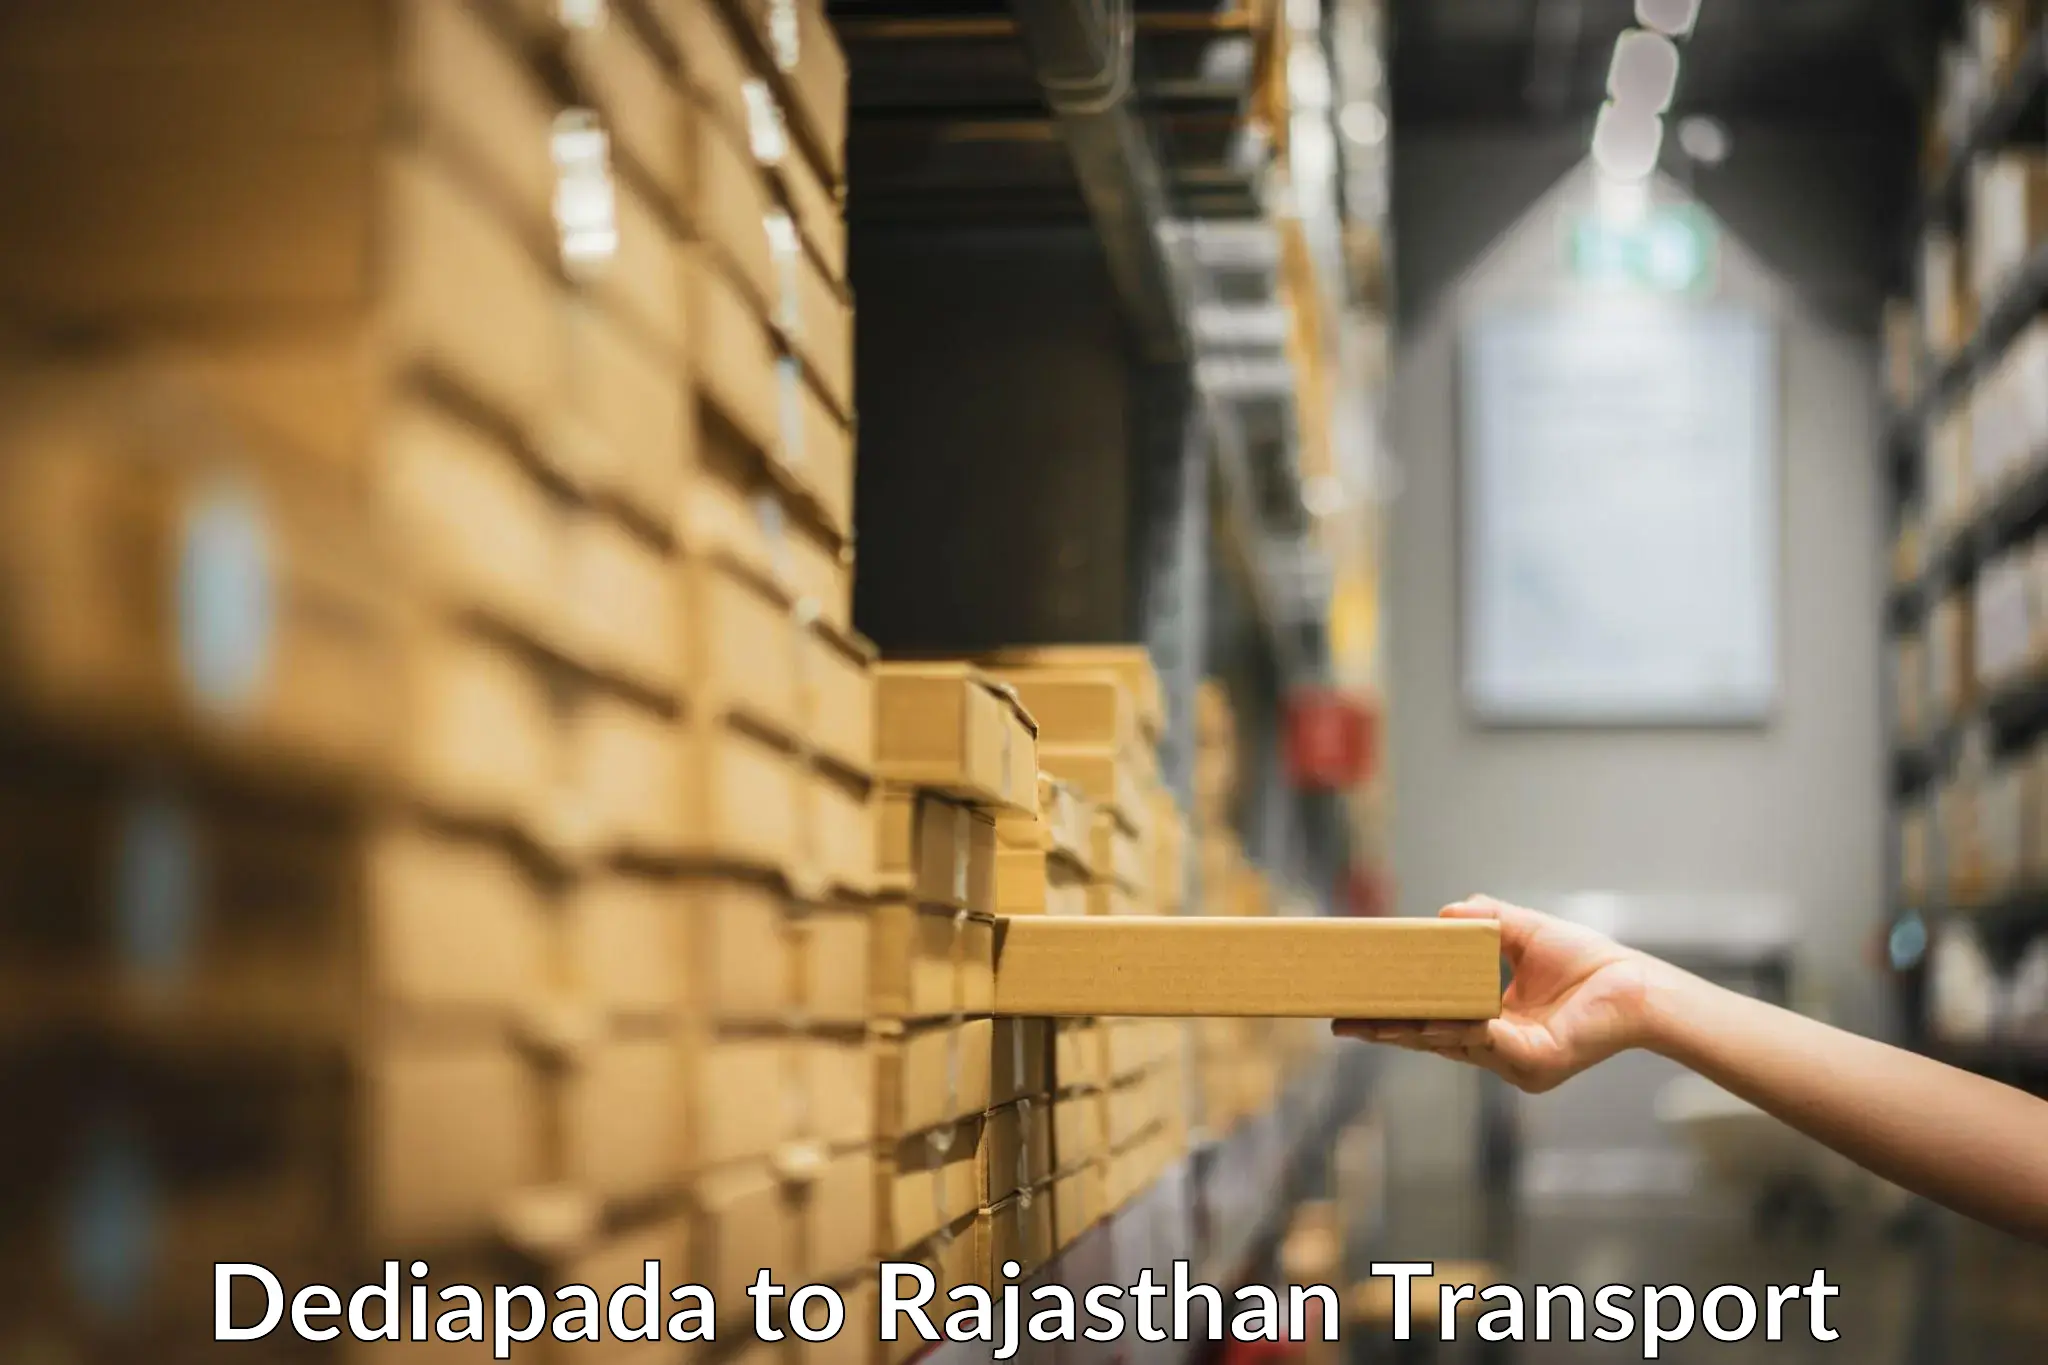 India truck logistics services Dediapada to Fatehpur Sikar